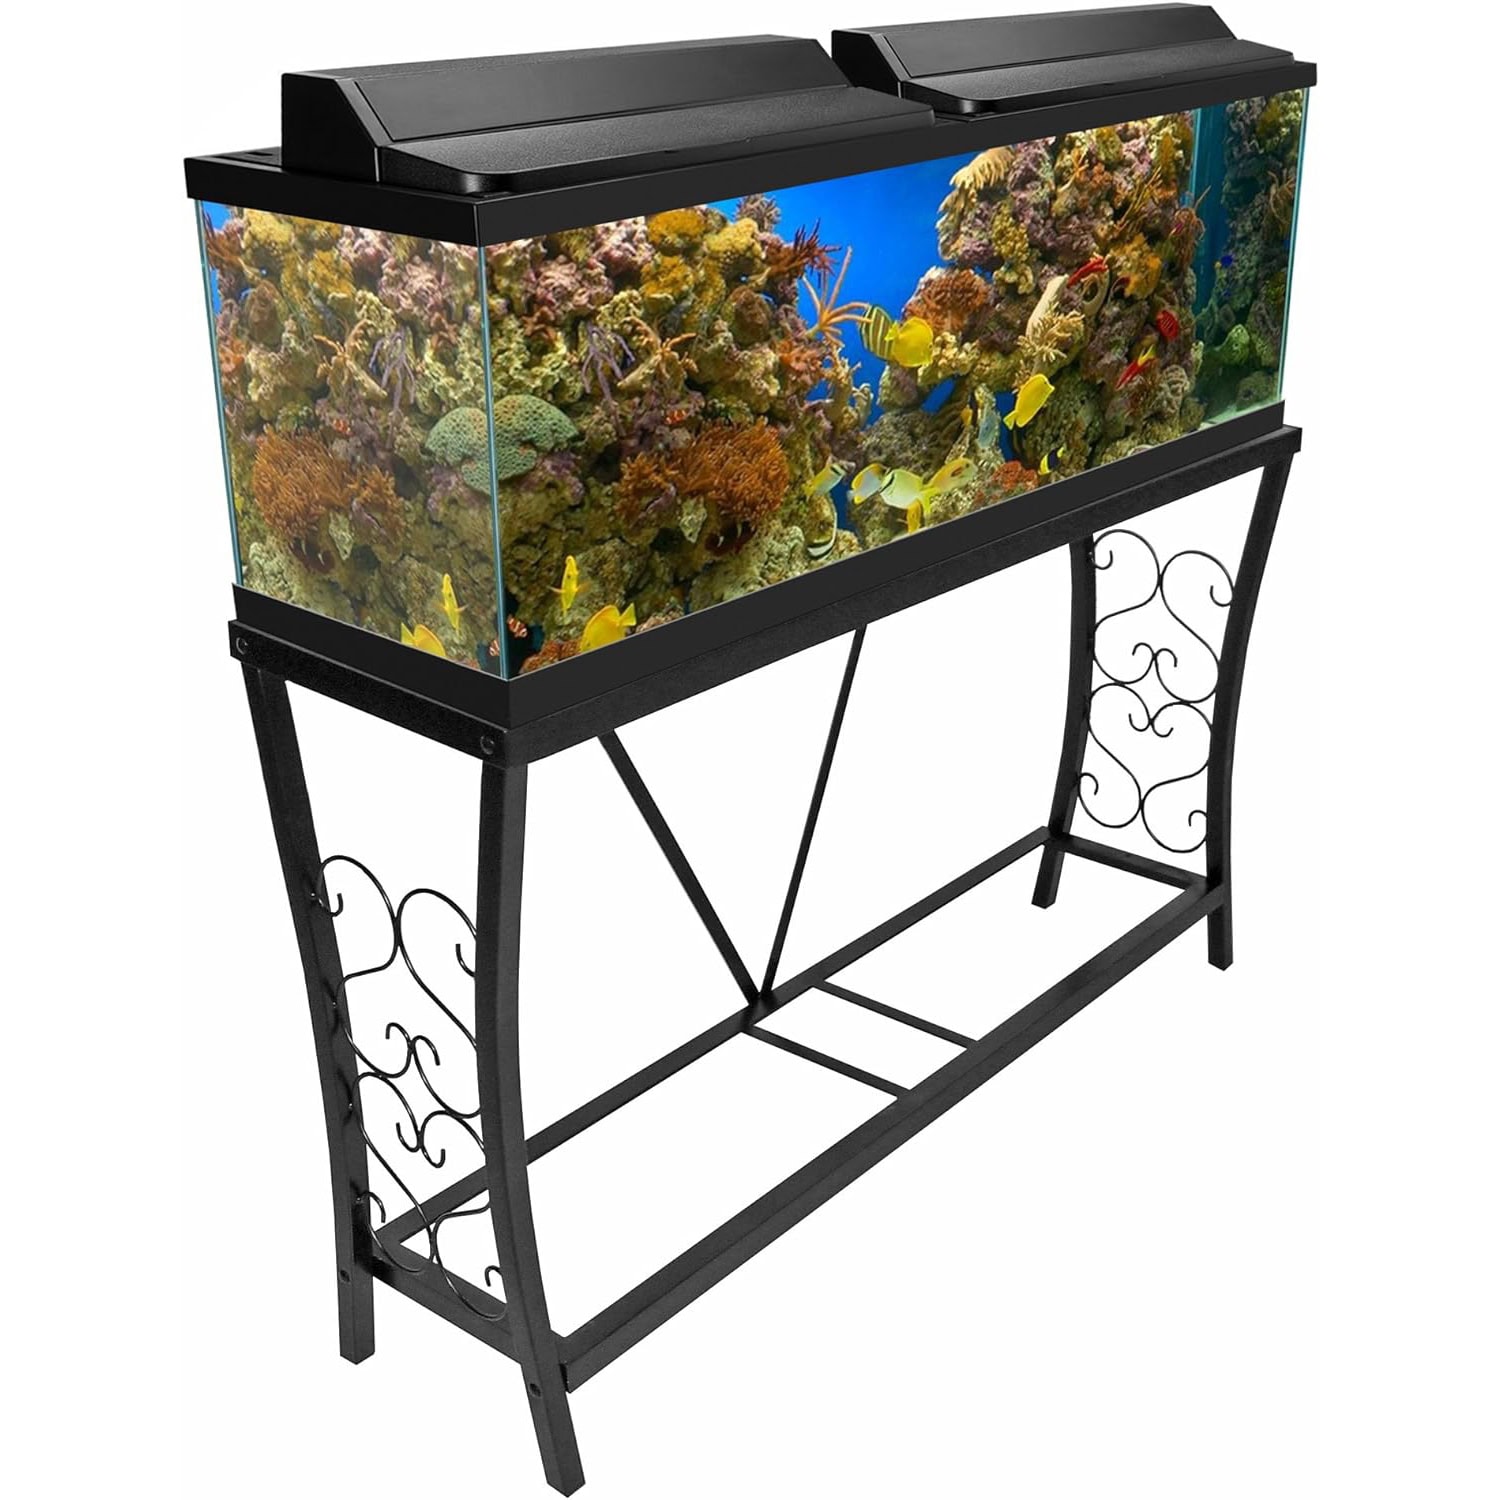 Aquatic Fundamentals 55 Gallon Metal Aquarium Stand